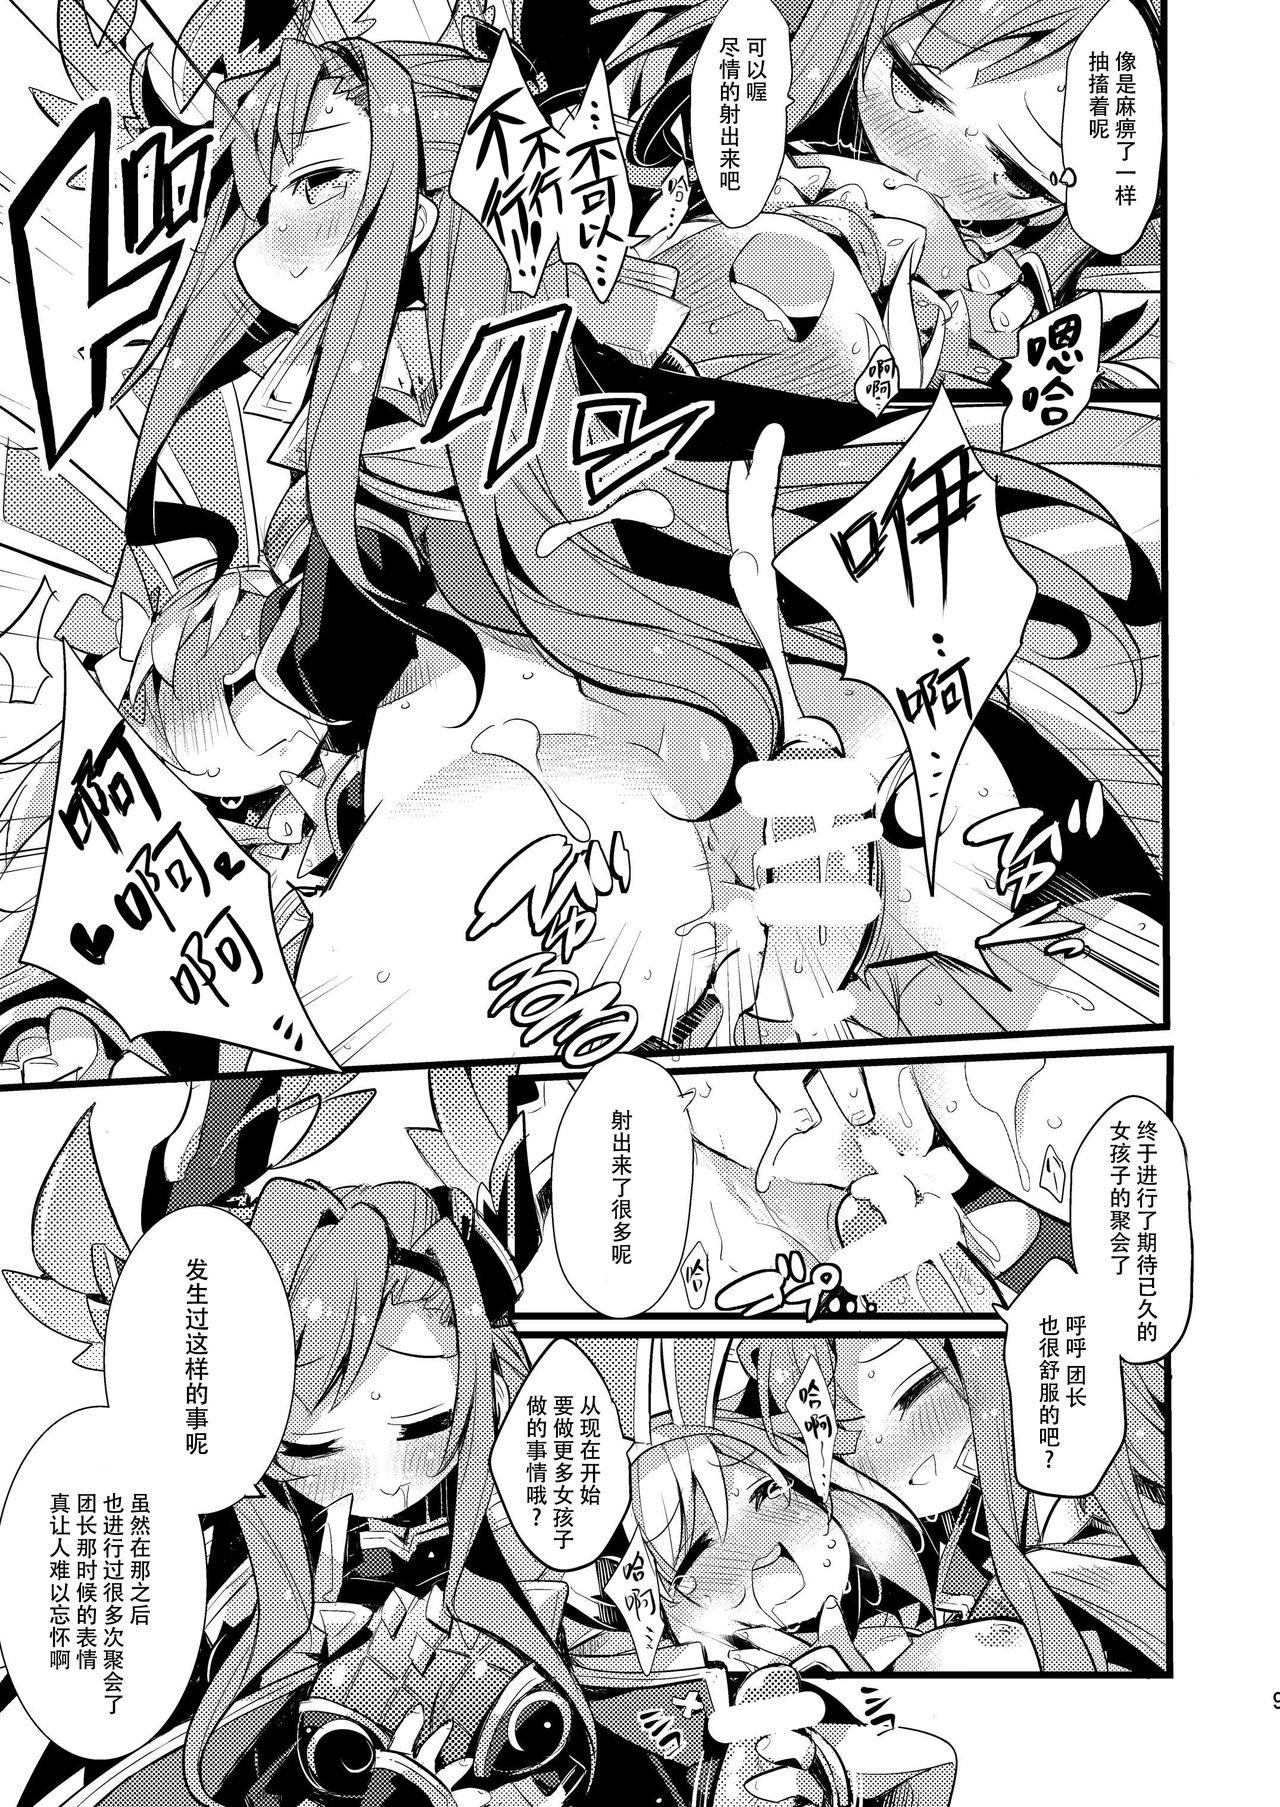 Fodendo Usagi Danchou wa Juttens o Subeshi Mono - Granblue fantasy Breeding - Page 9